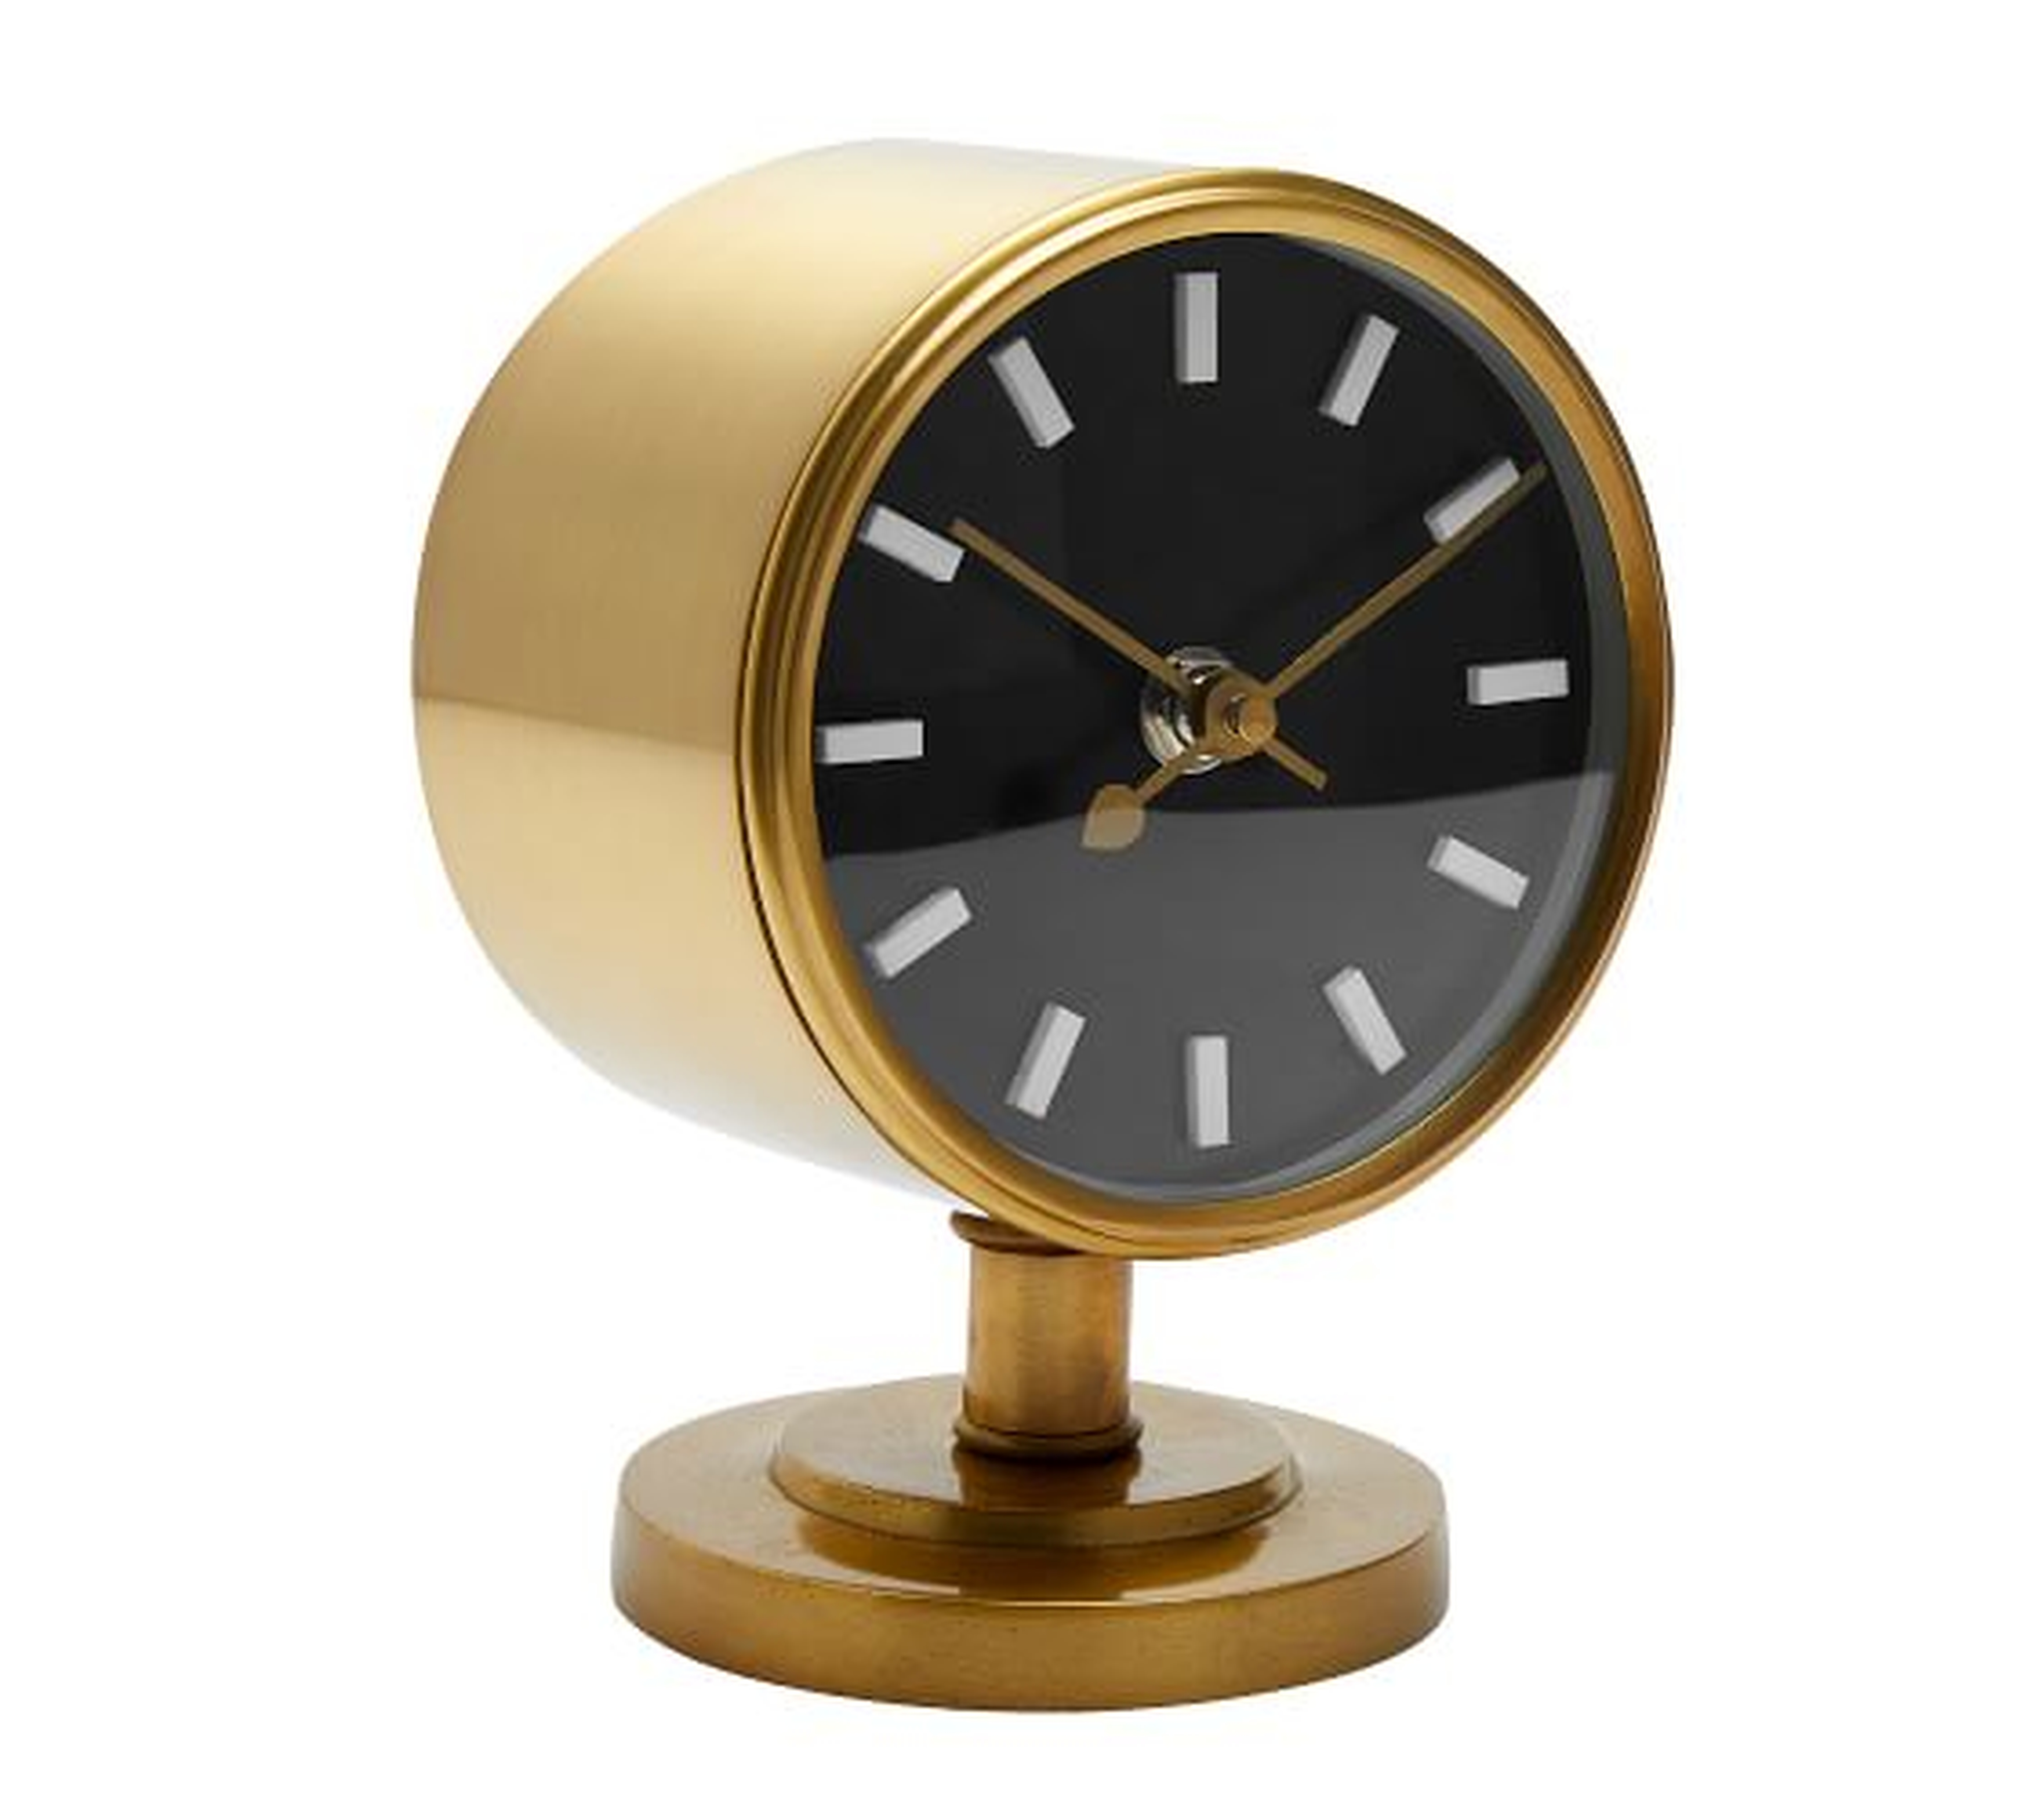 Flemming Desktop Clock, Brass - Hudsonhill Foundry